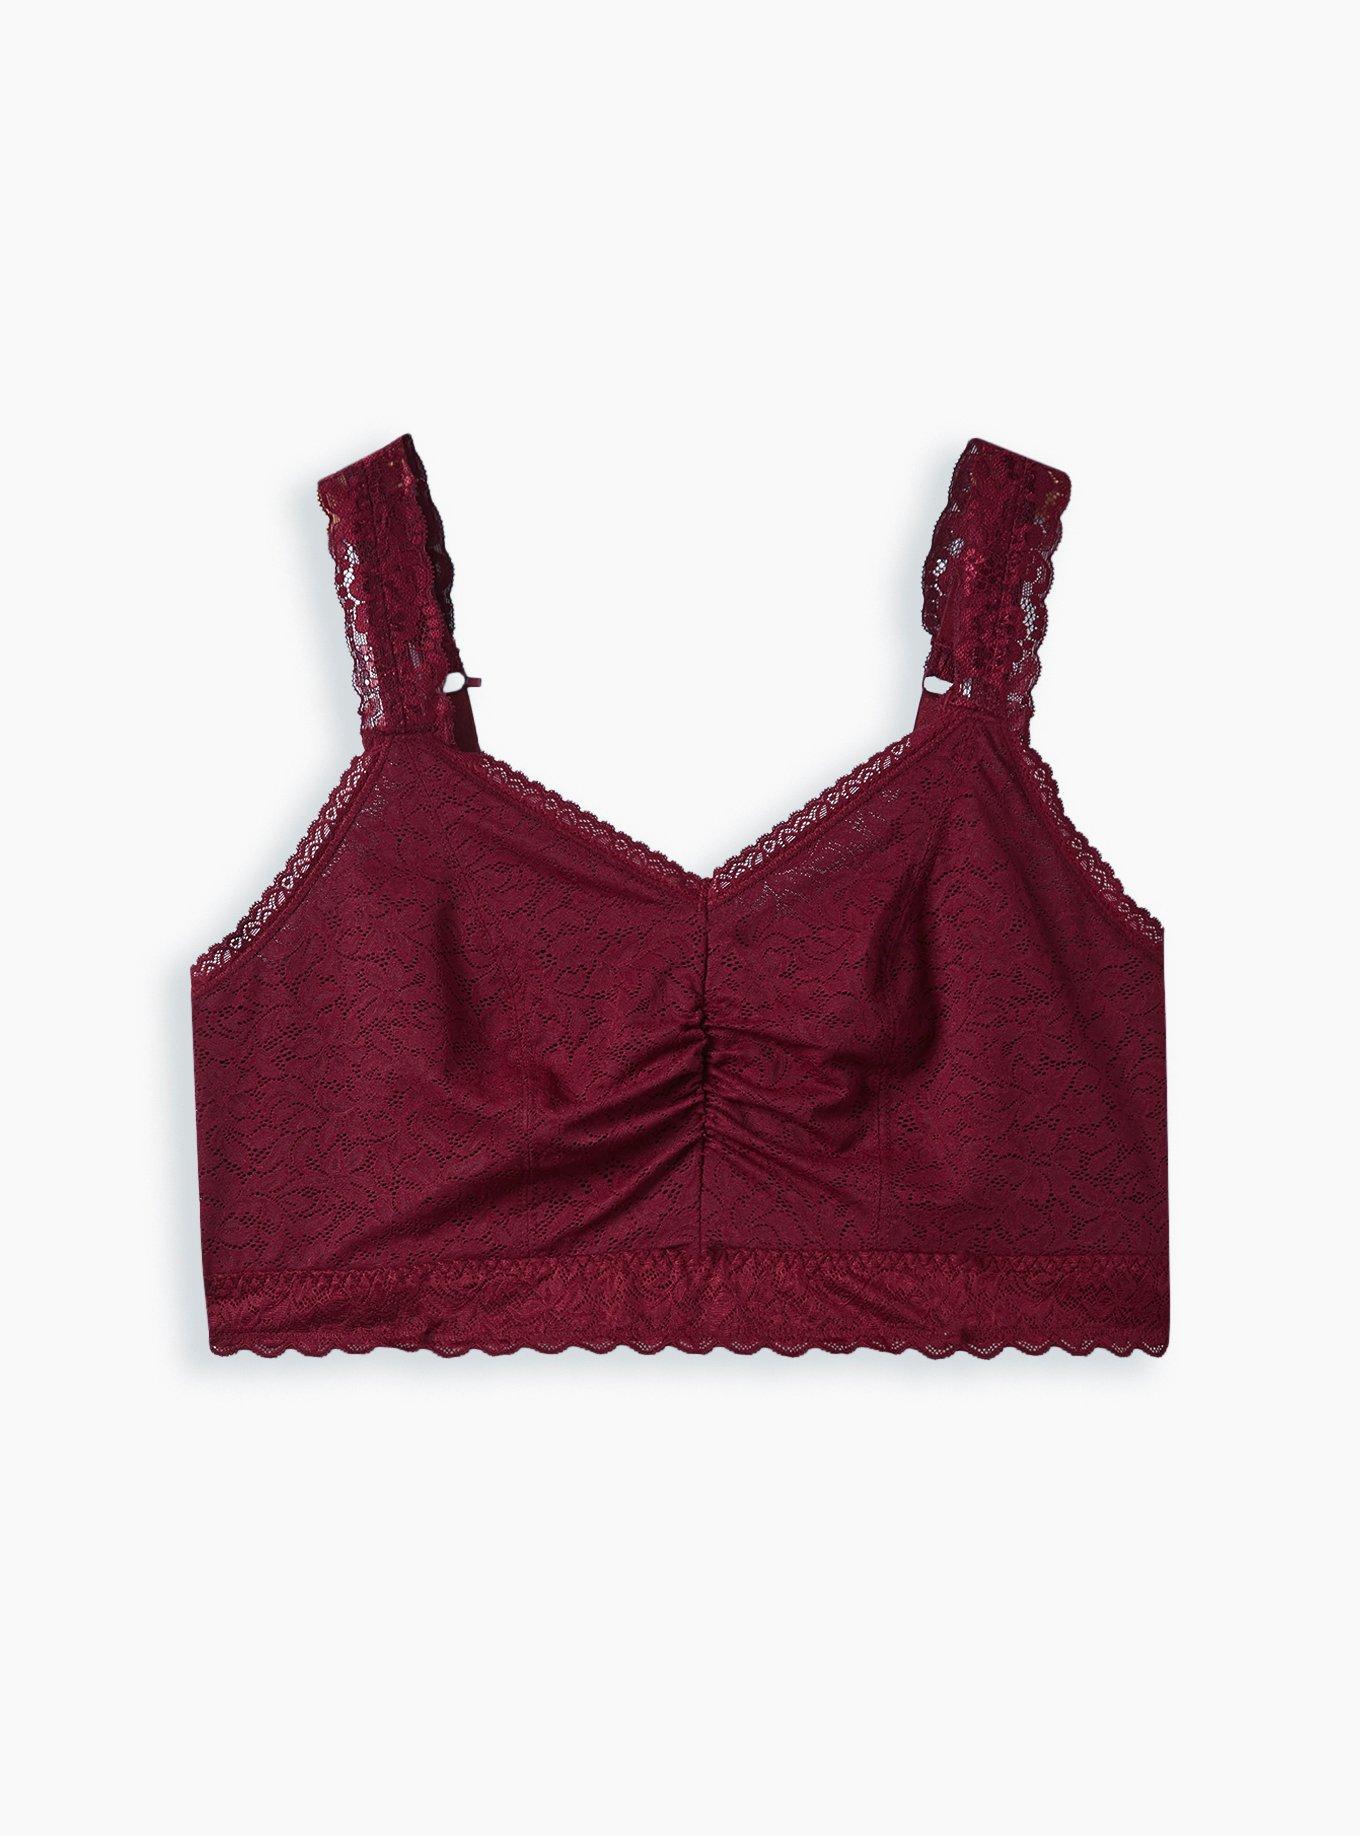 torrid, Intimates & Sleepwear, Torrid Curve 46d Bra Burgundy Red Lace